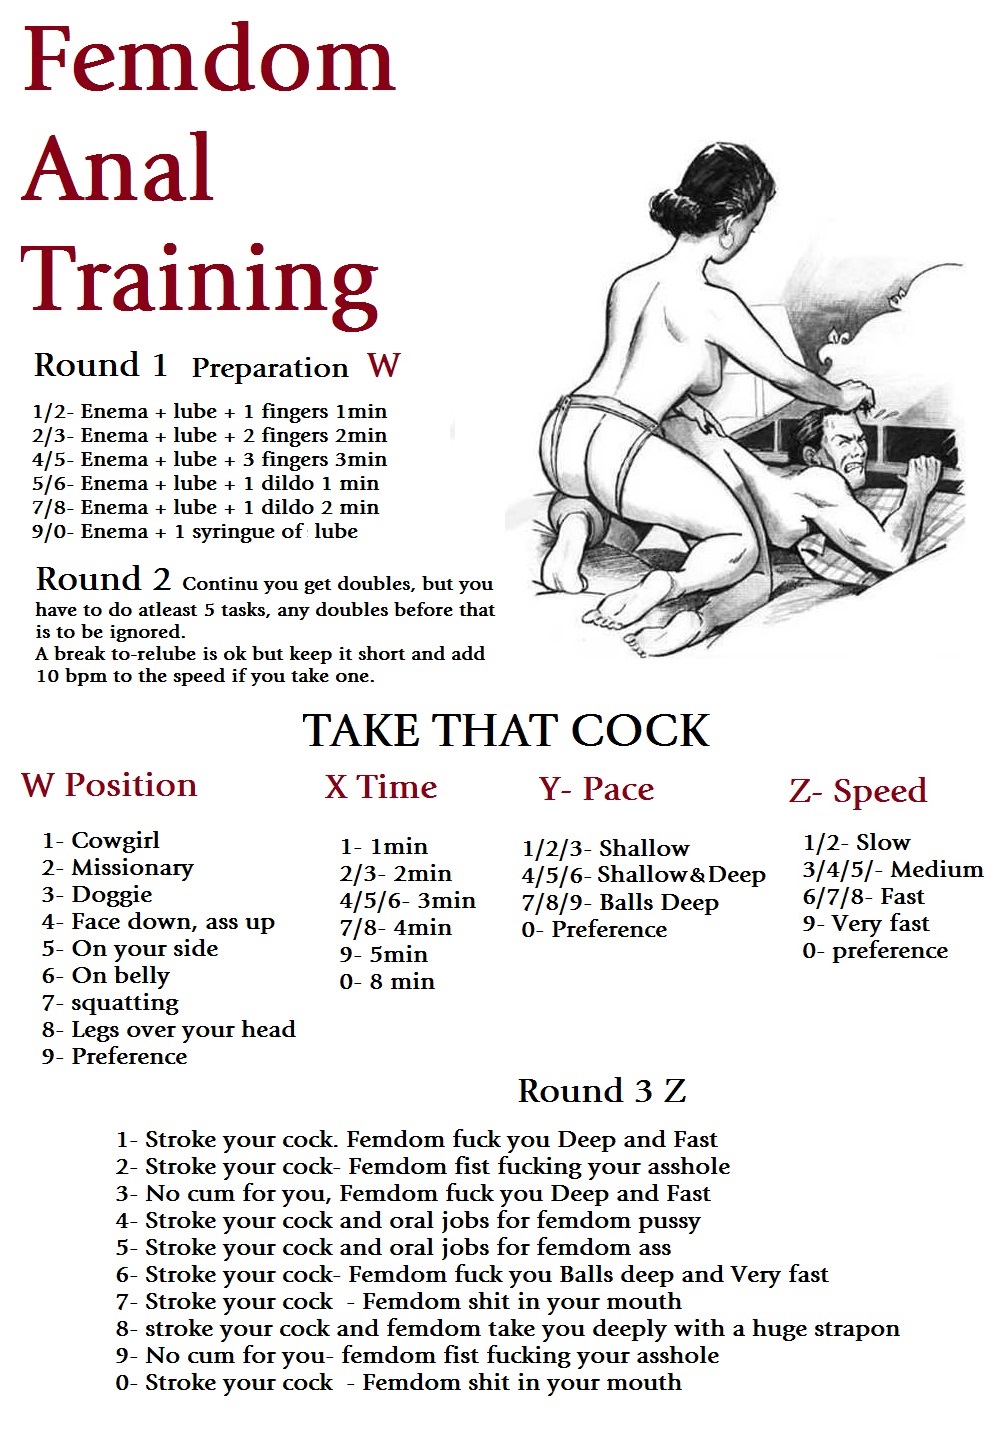 Femdom anal training